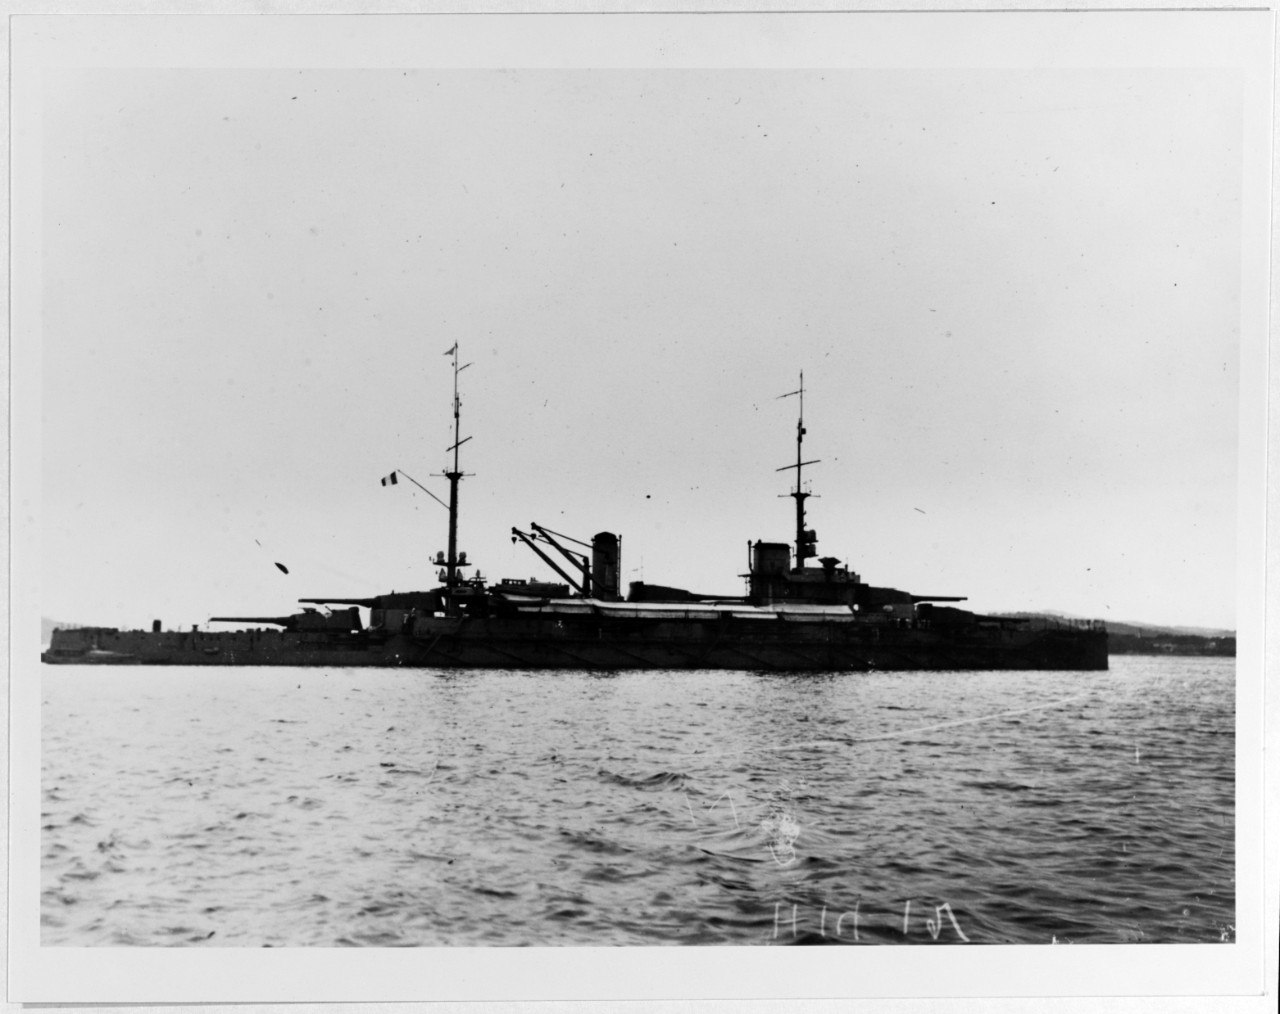 BRETAGNE (French Battleship, 1913-1940)